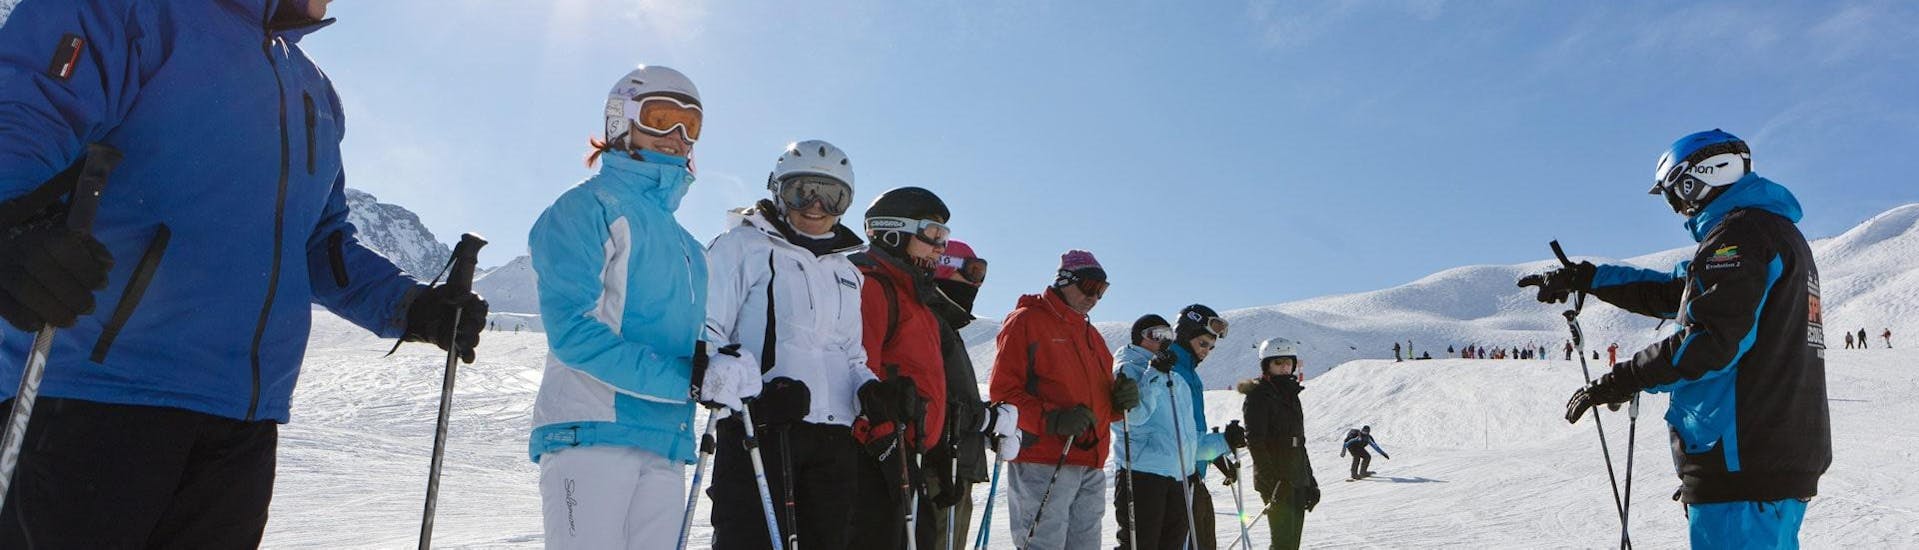 Des adultes participent à des Cours de ski Adultes - Arc 1950 avec Evolution 2 Spirit - Arc 1950 & Villaroger.